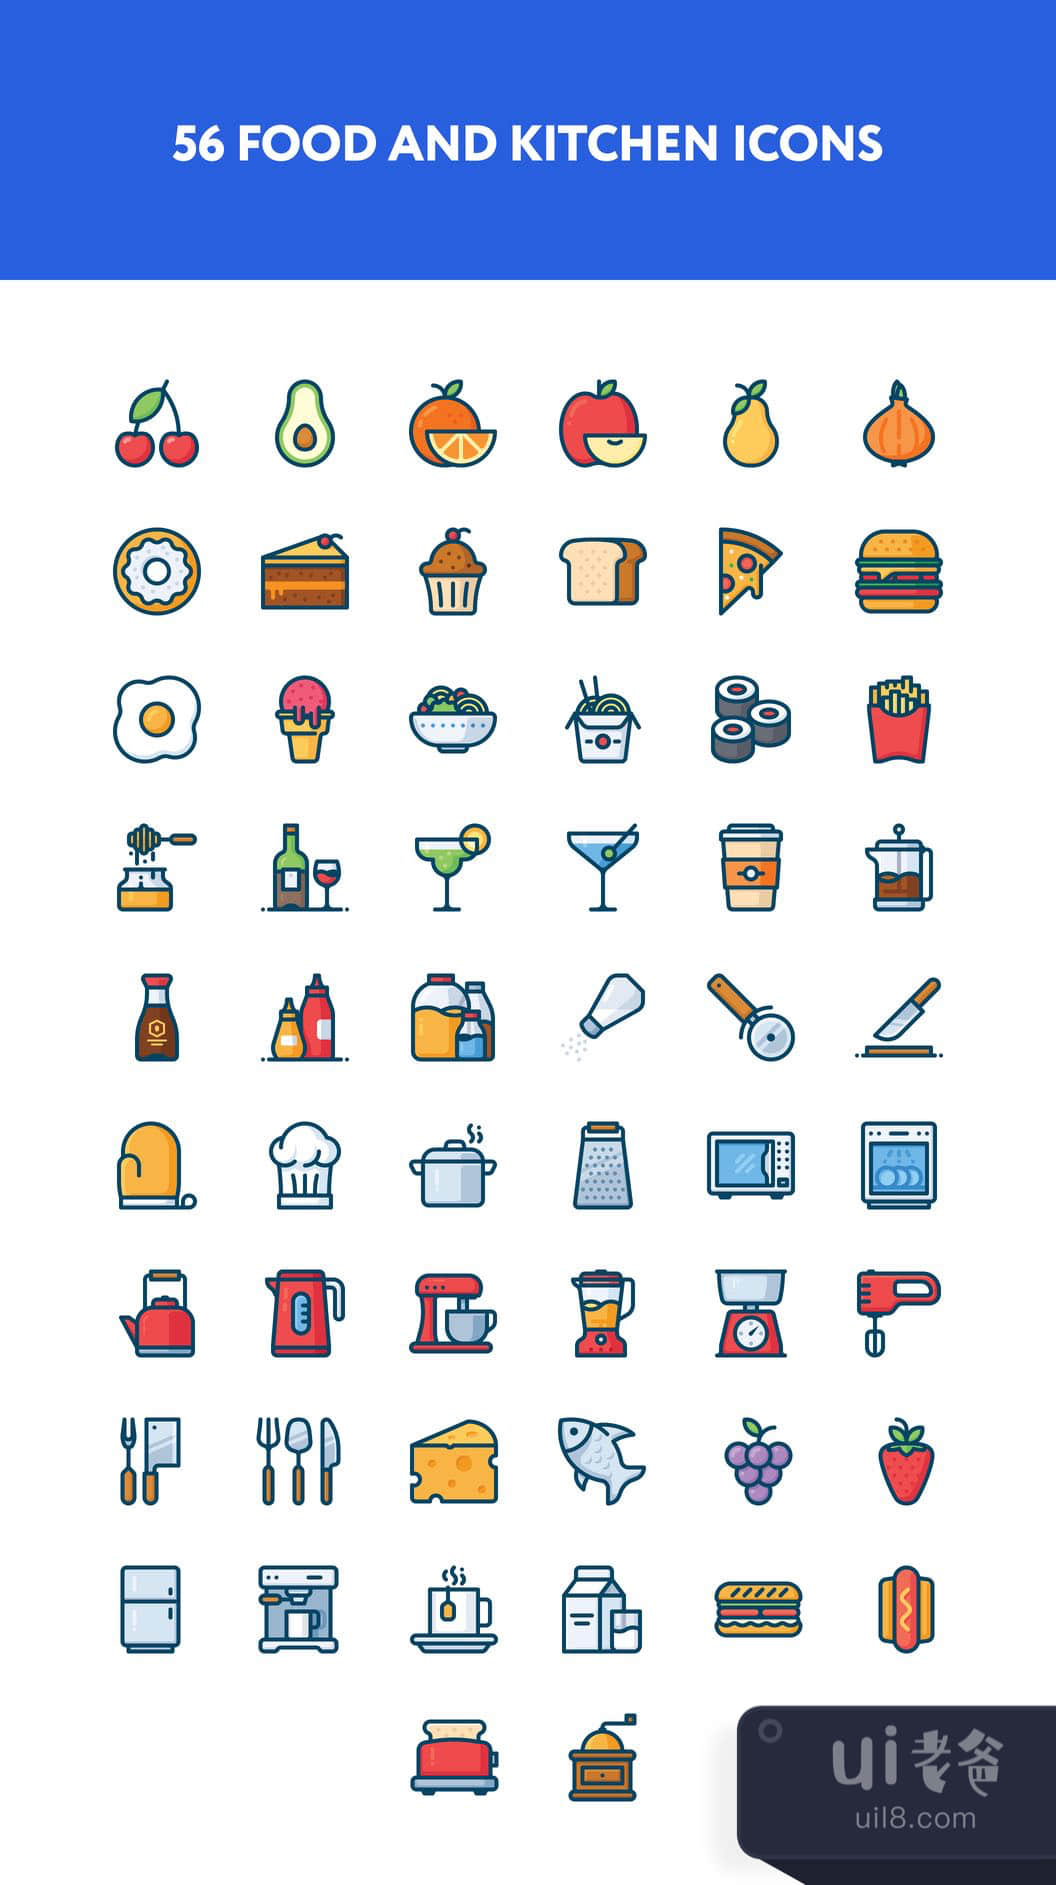 食品和厨房图标 (Food & kitchen icons)插图